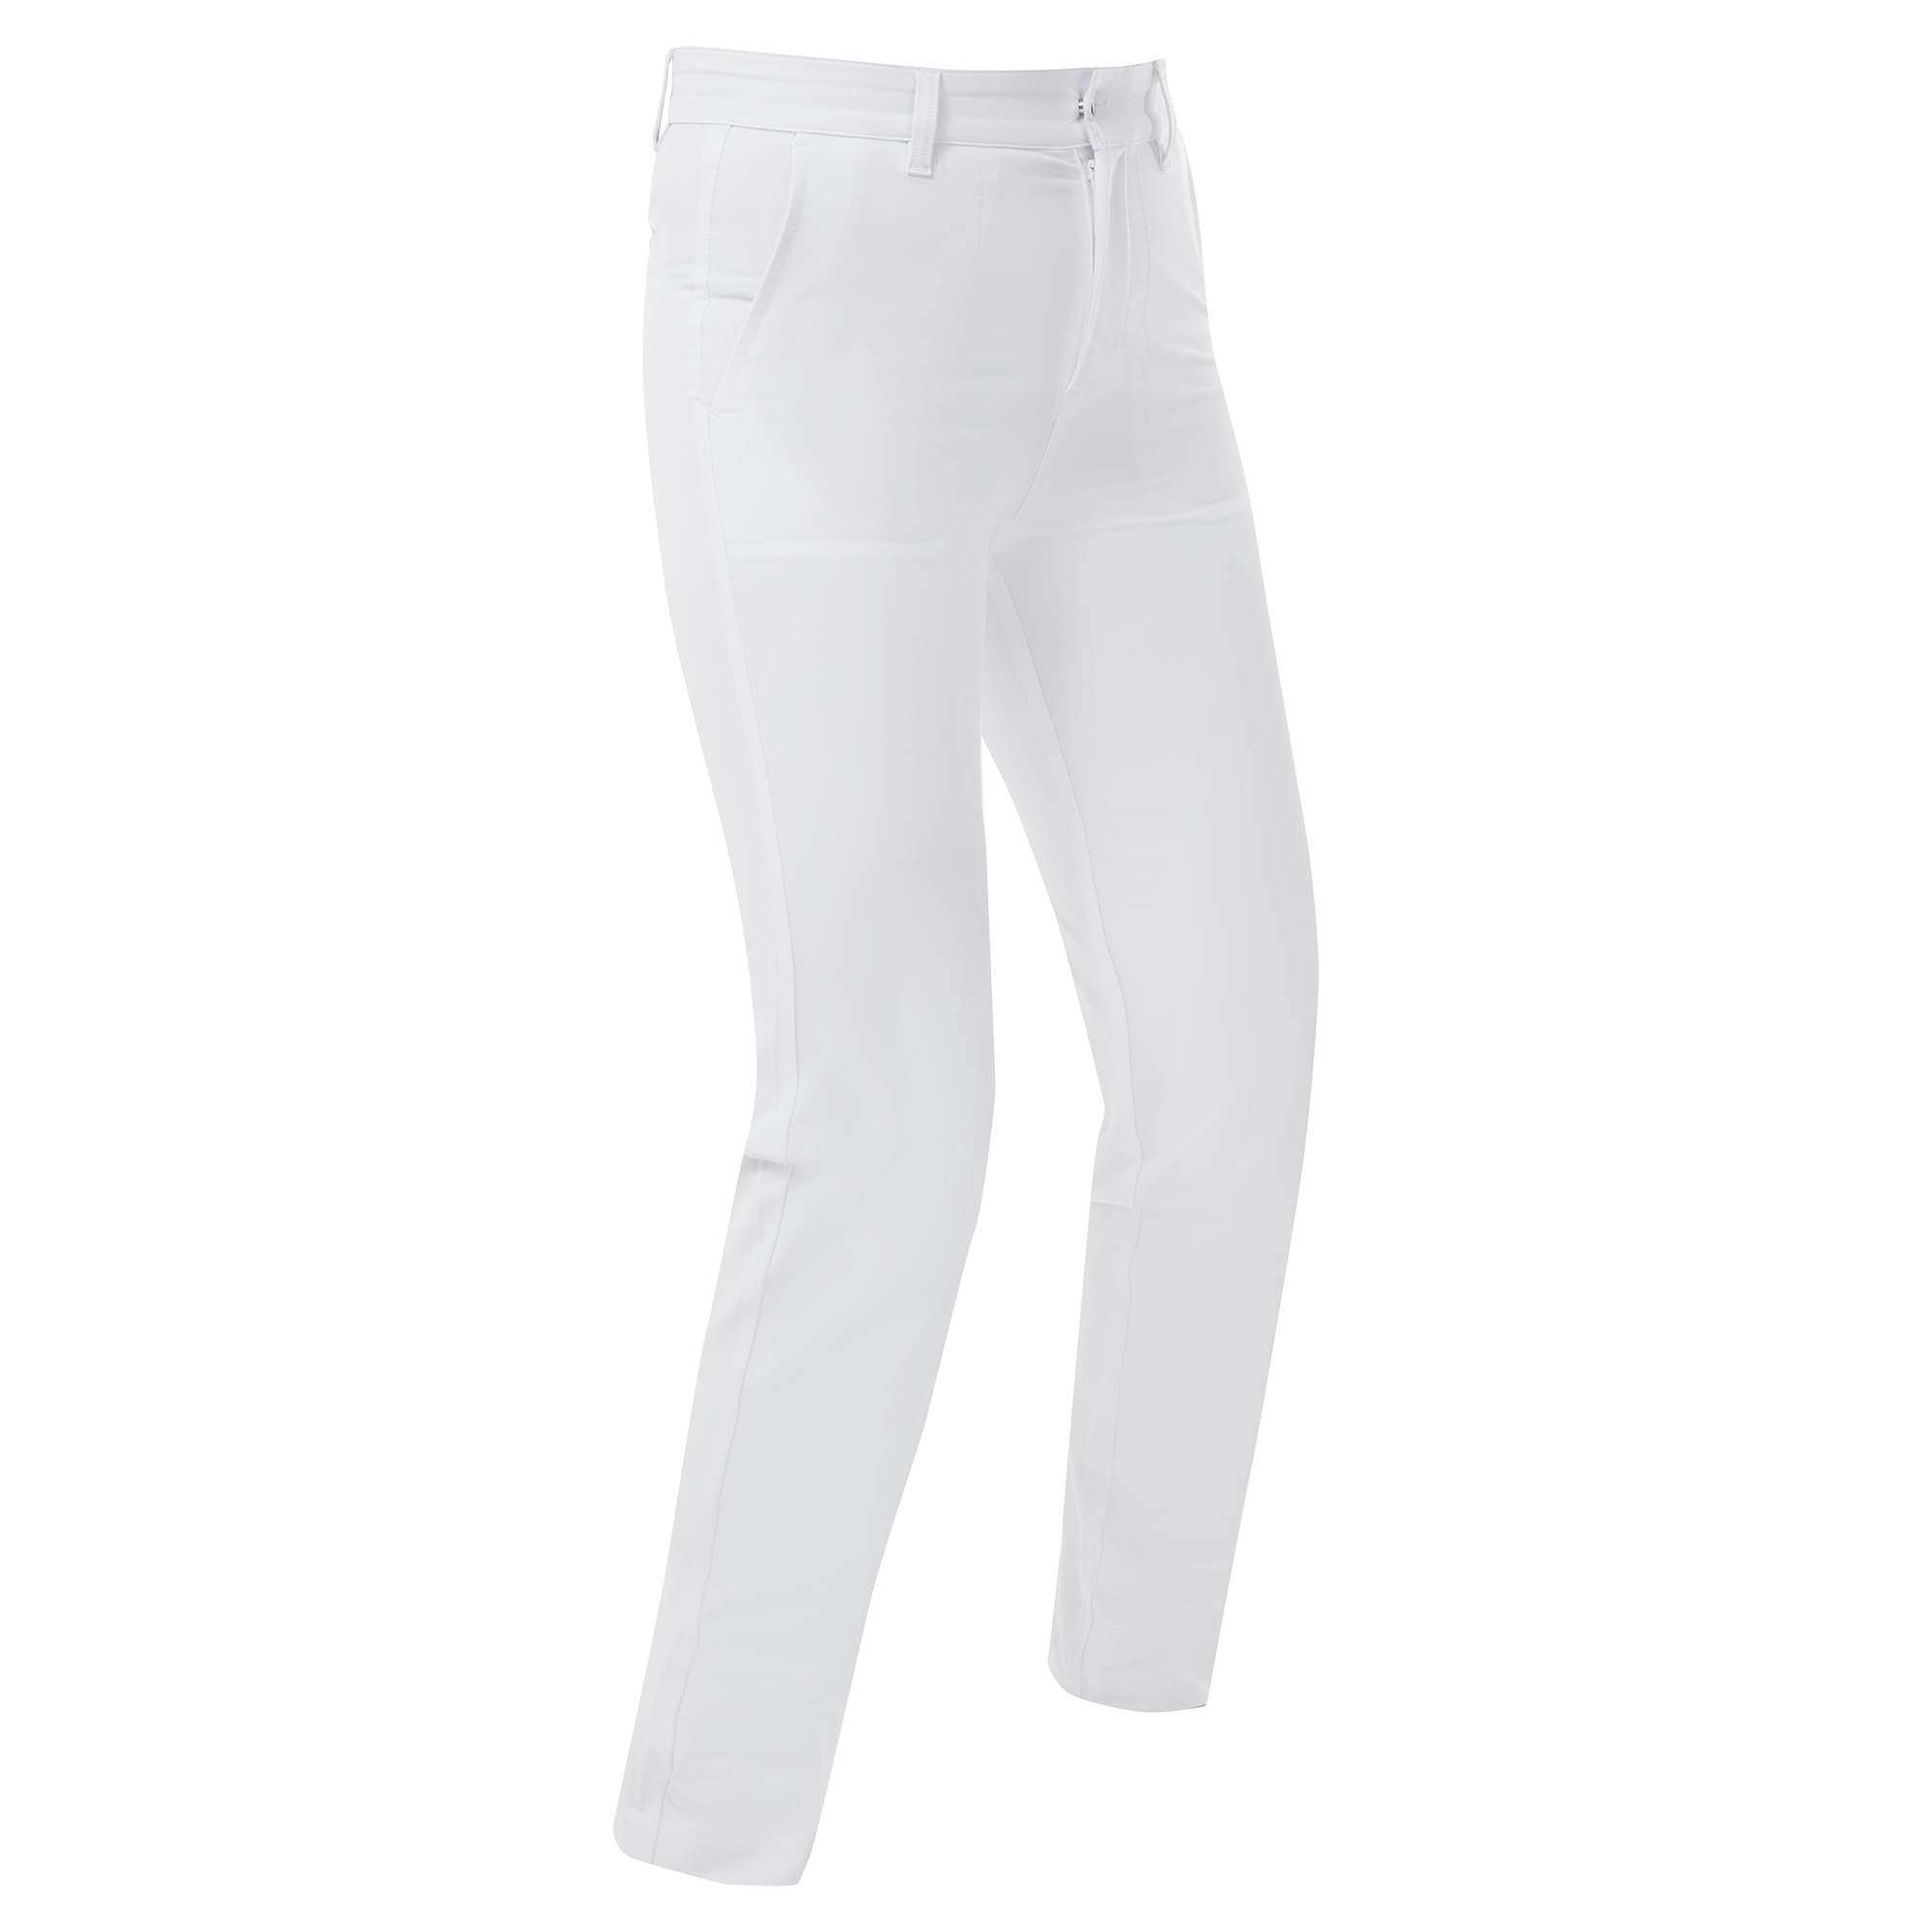 FootJoy Stretch dámské golfové kalhoty, bílé, vel. S